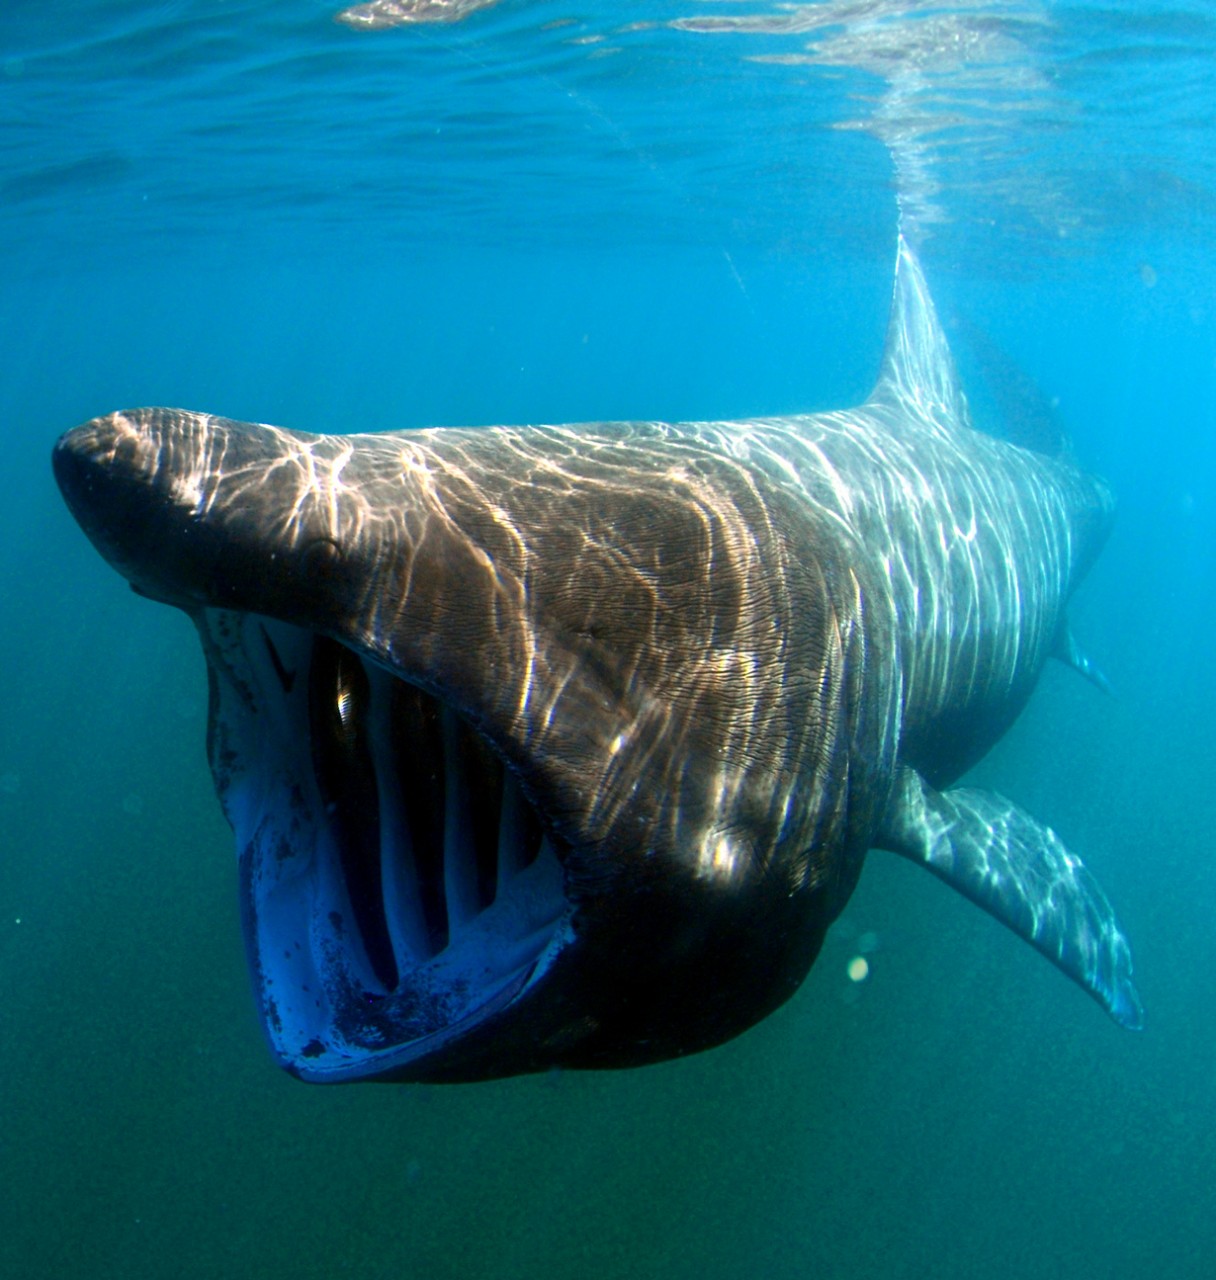 Гигантская акула. Вселяют ужас внушительные размеры (до 10 м) и гигантская пасть существа. Однако, великан абсолютно равнодушен к человеку. Дайверы без особого риска могут приближаться к животному, в то время как оно продолжает свой путь, не замечая «свиты». На заметку: гигантская акула держит свой рот открытым во время охоты на планктон. Стоит также отметить, что животное не заглатывает воду, а фильтрует её через жабры. (Greg Skomal/NOAA Fisheries Service)